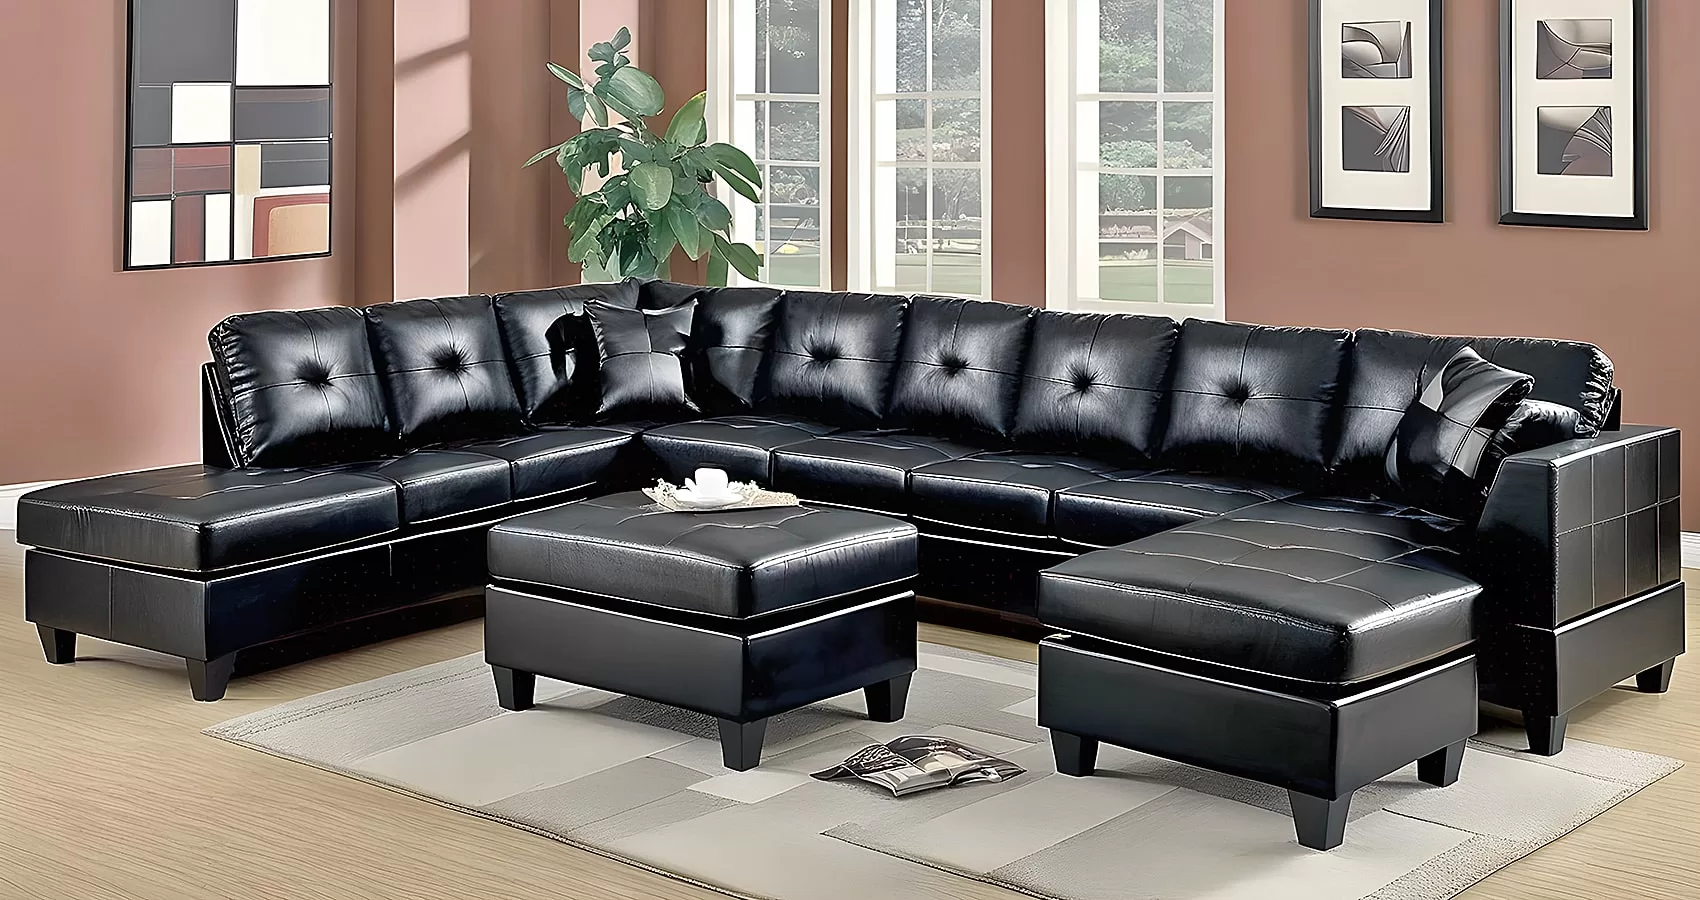 Black Couch Leather | Black Leather Couch | Black Leather Sofa